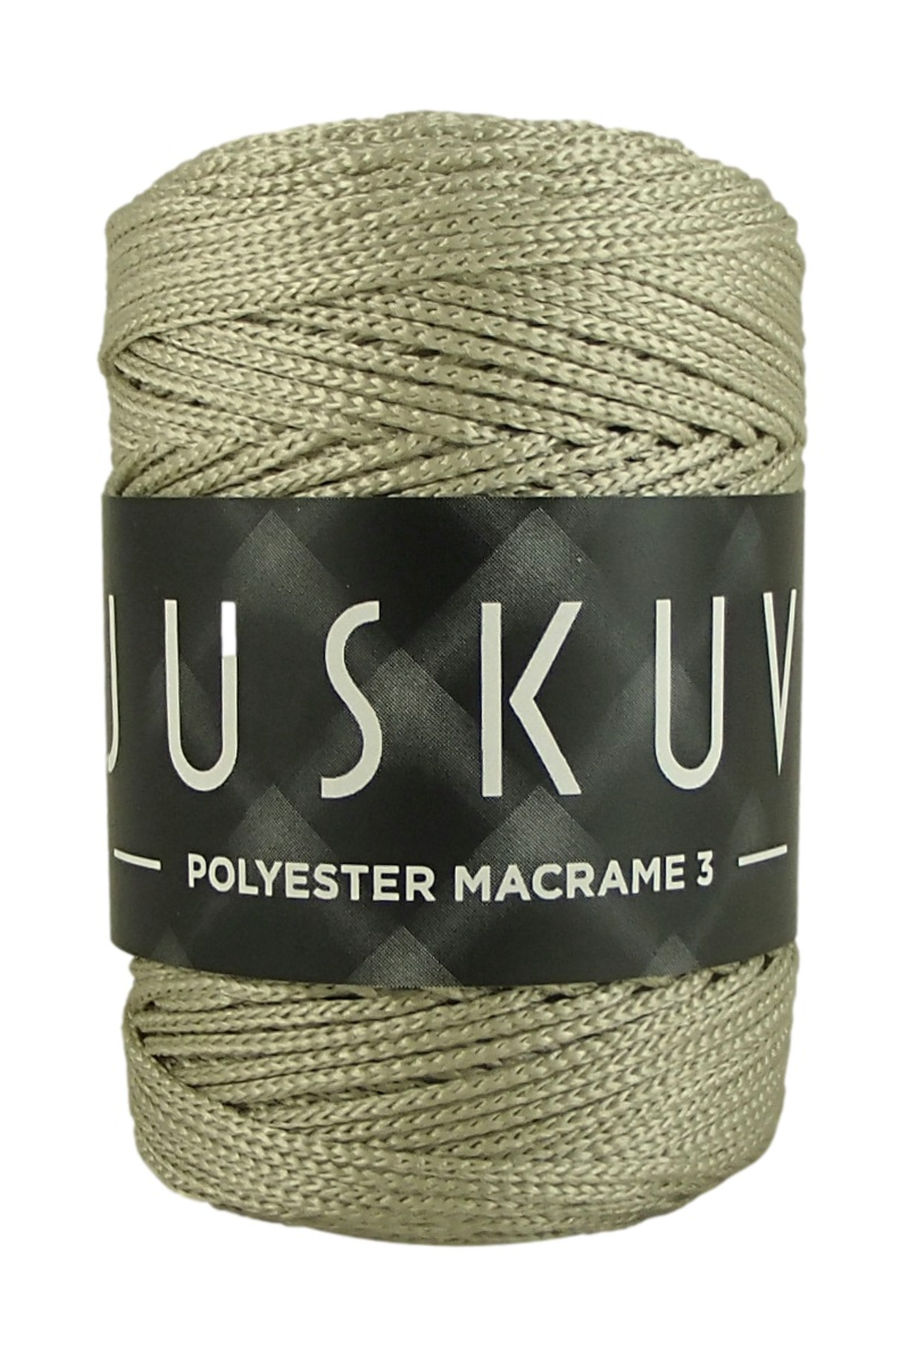 Polyester macrame Juskuv 44- béžová